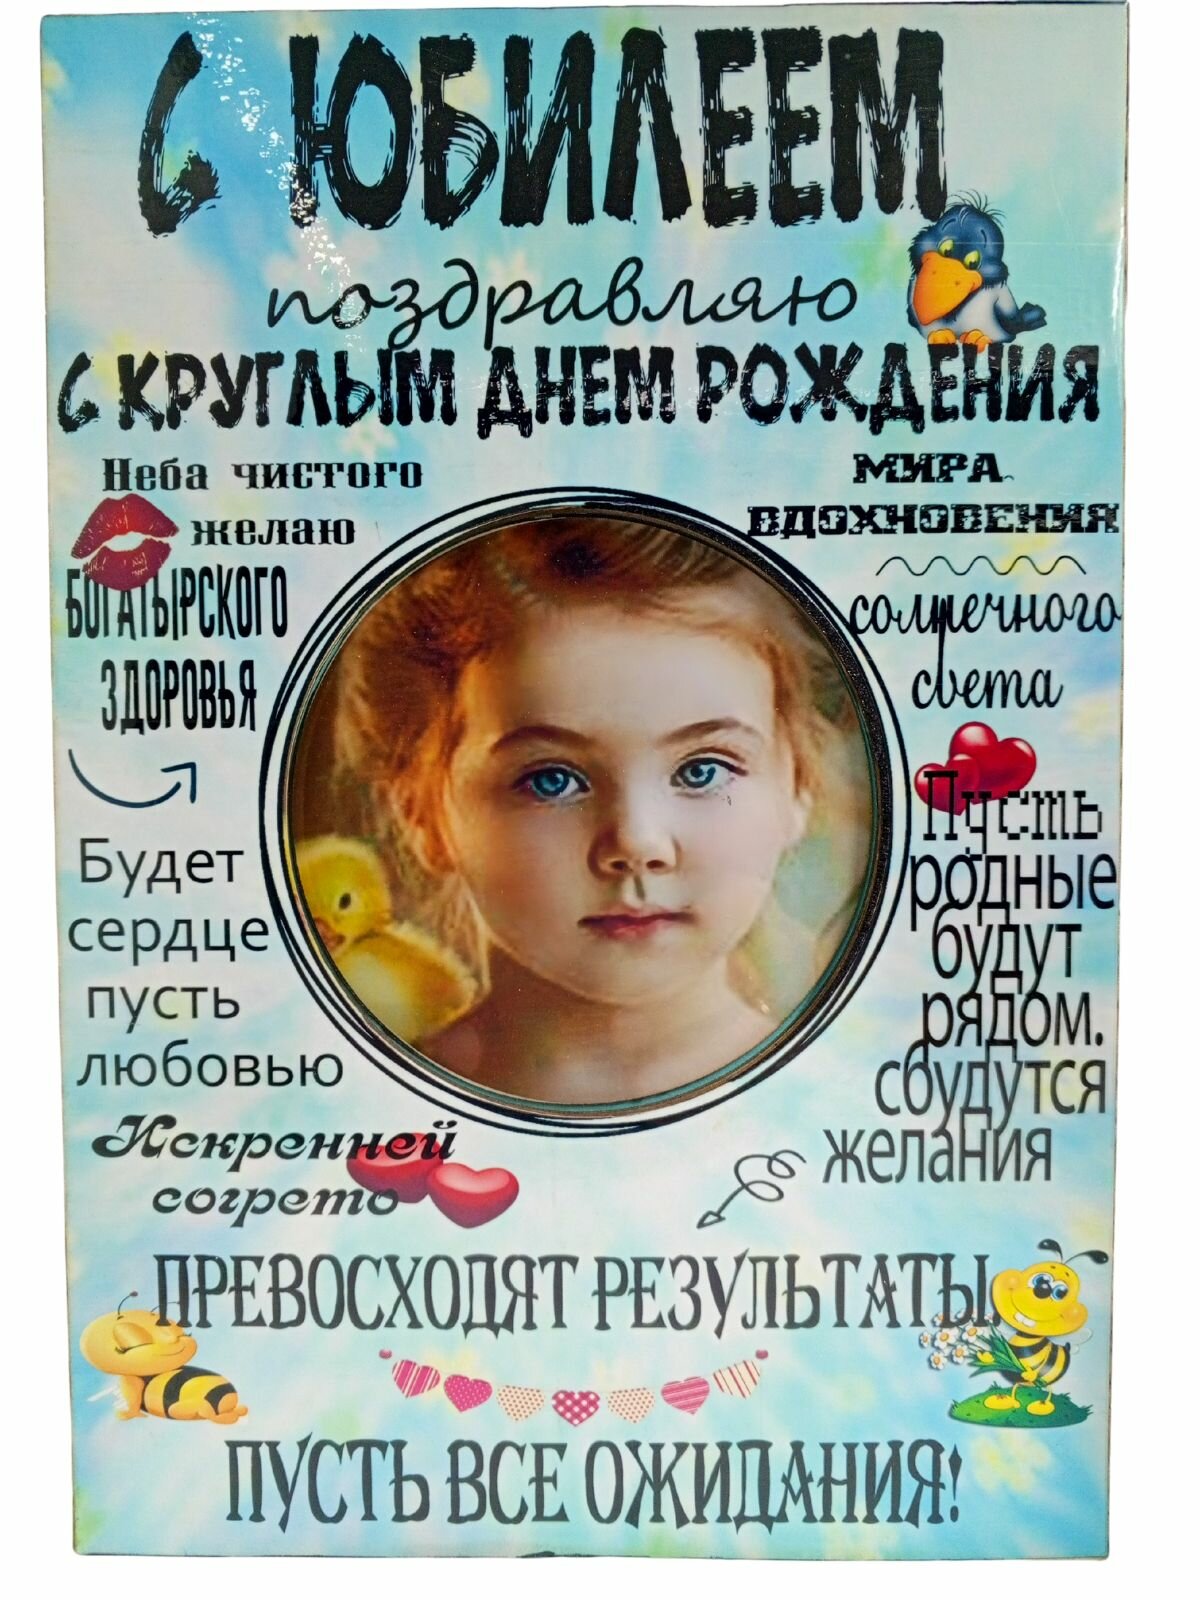 Фоторамка постер С Юбилеем с надписями